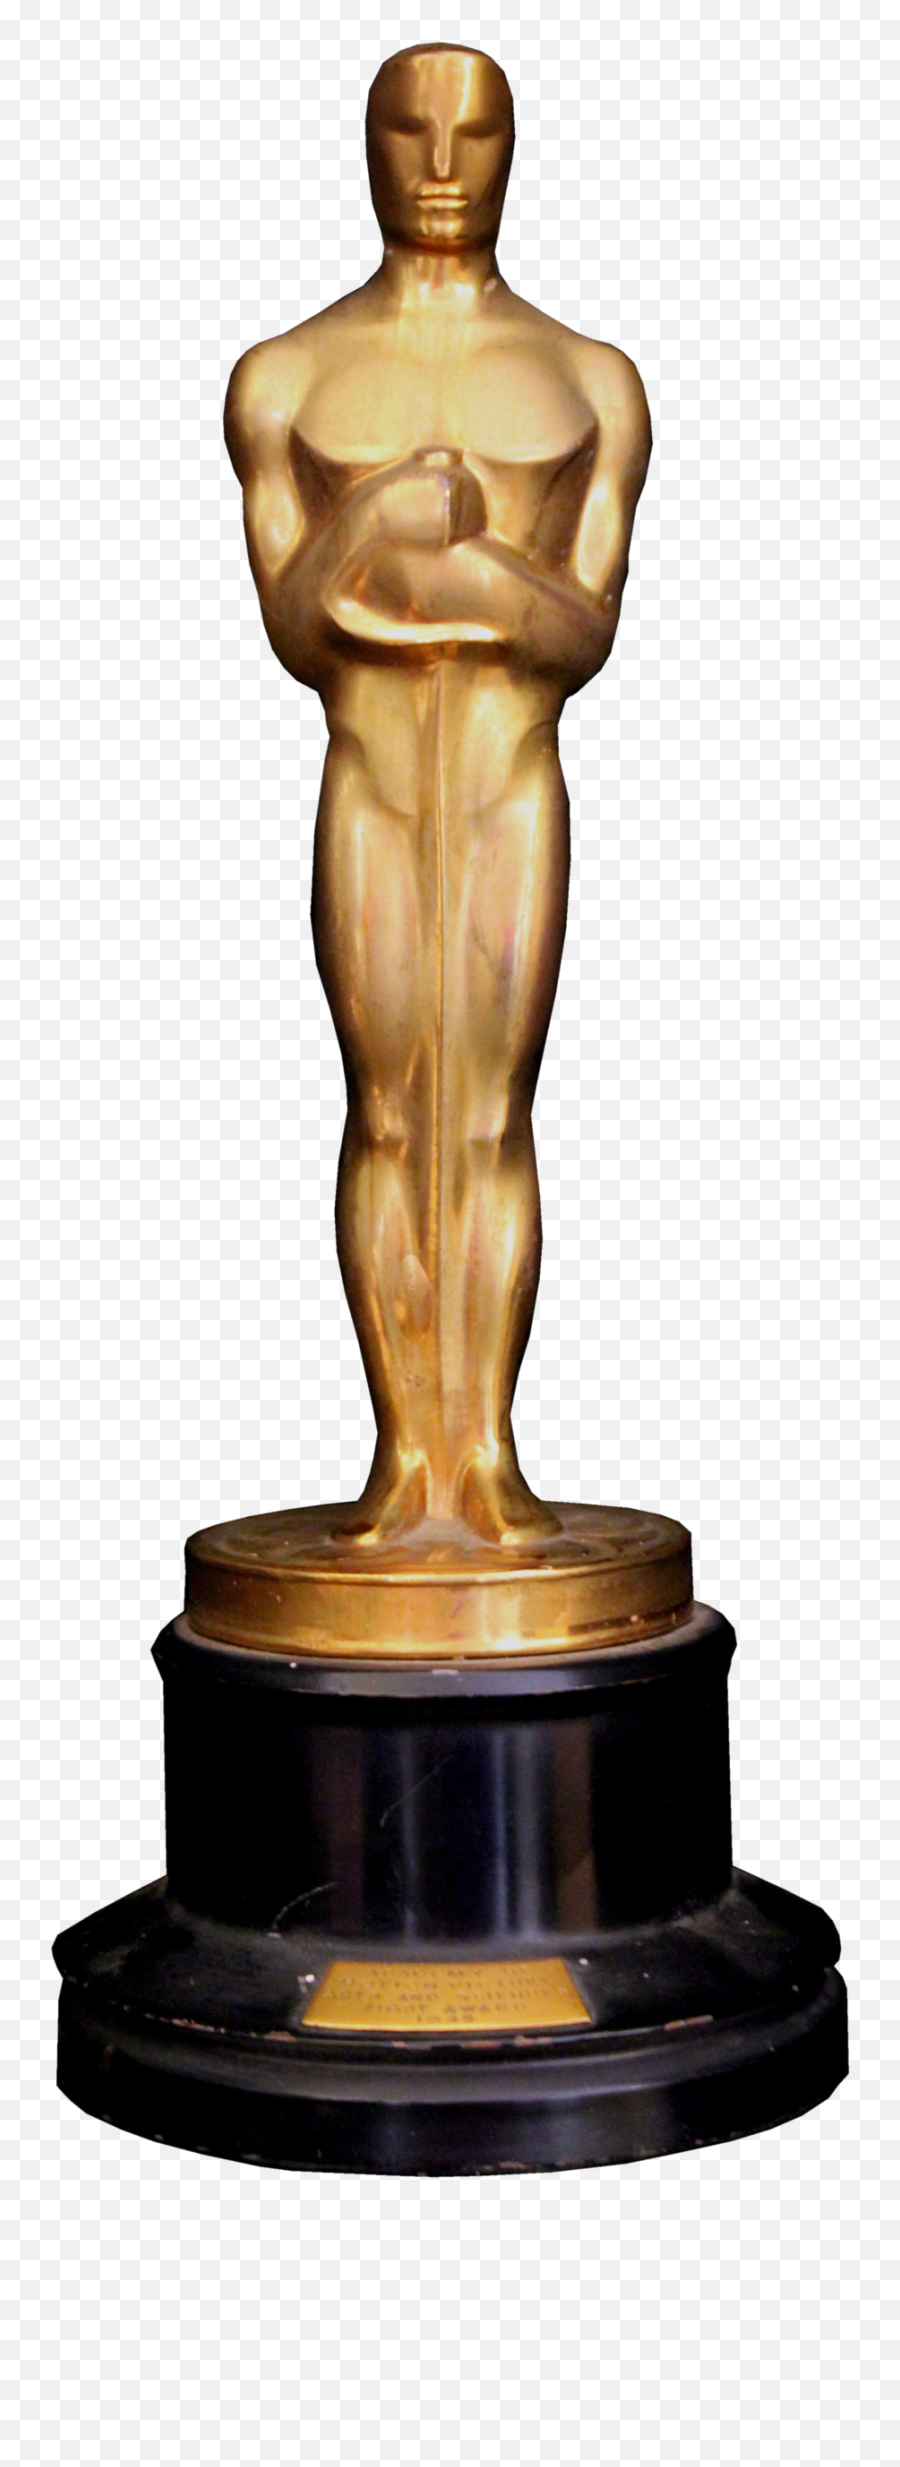 Academy Awards Png The Oscars - Oscar Academy Award Transparent,Award Png